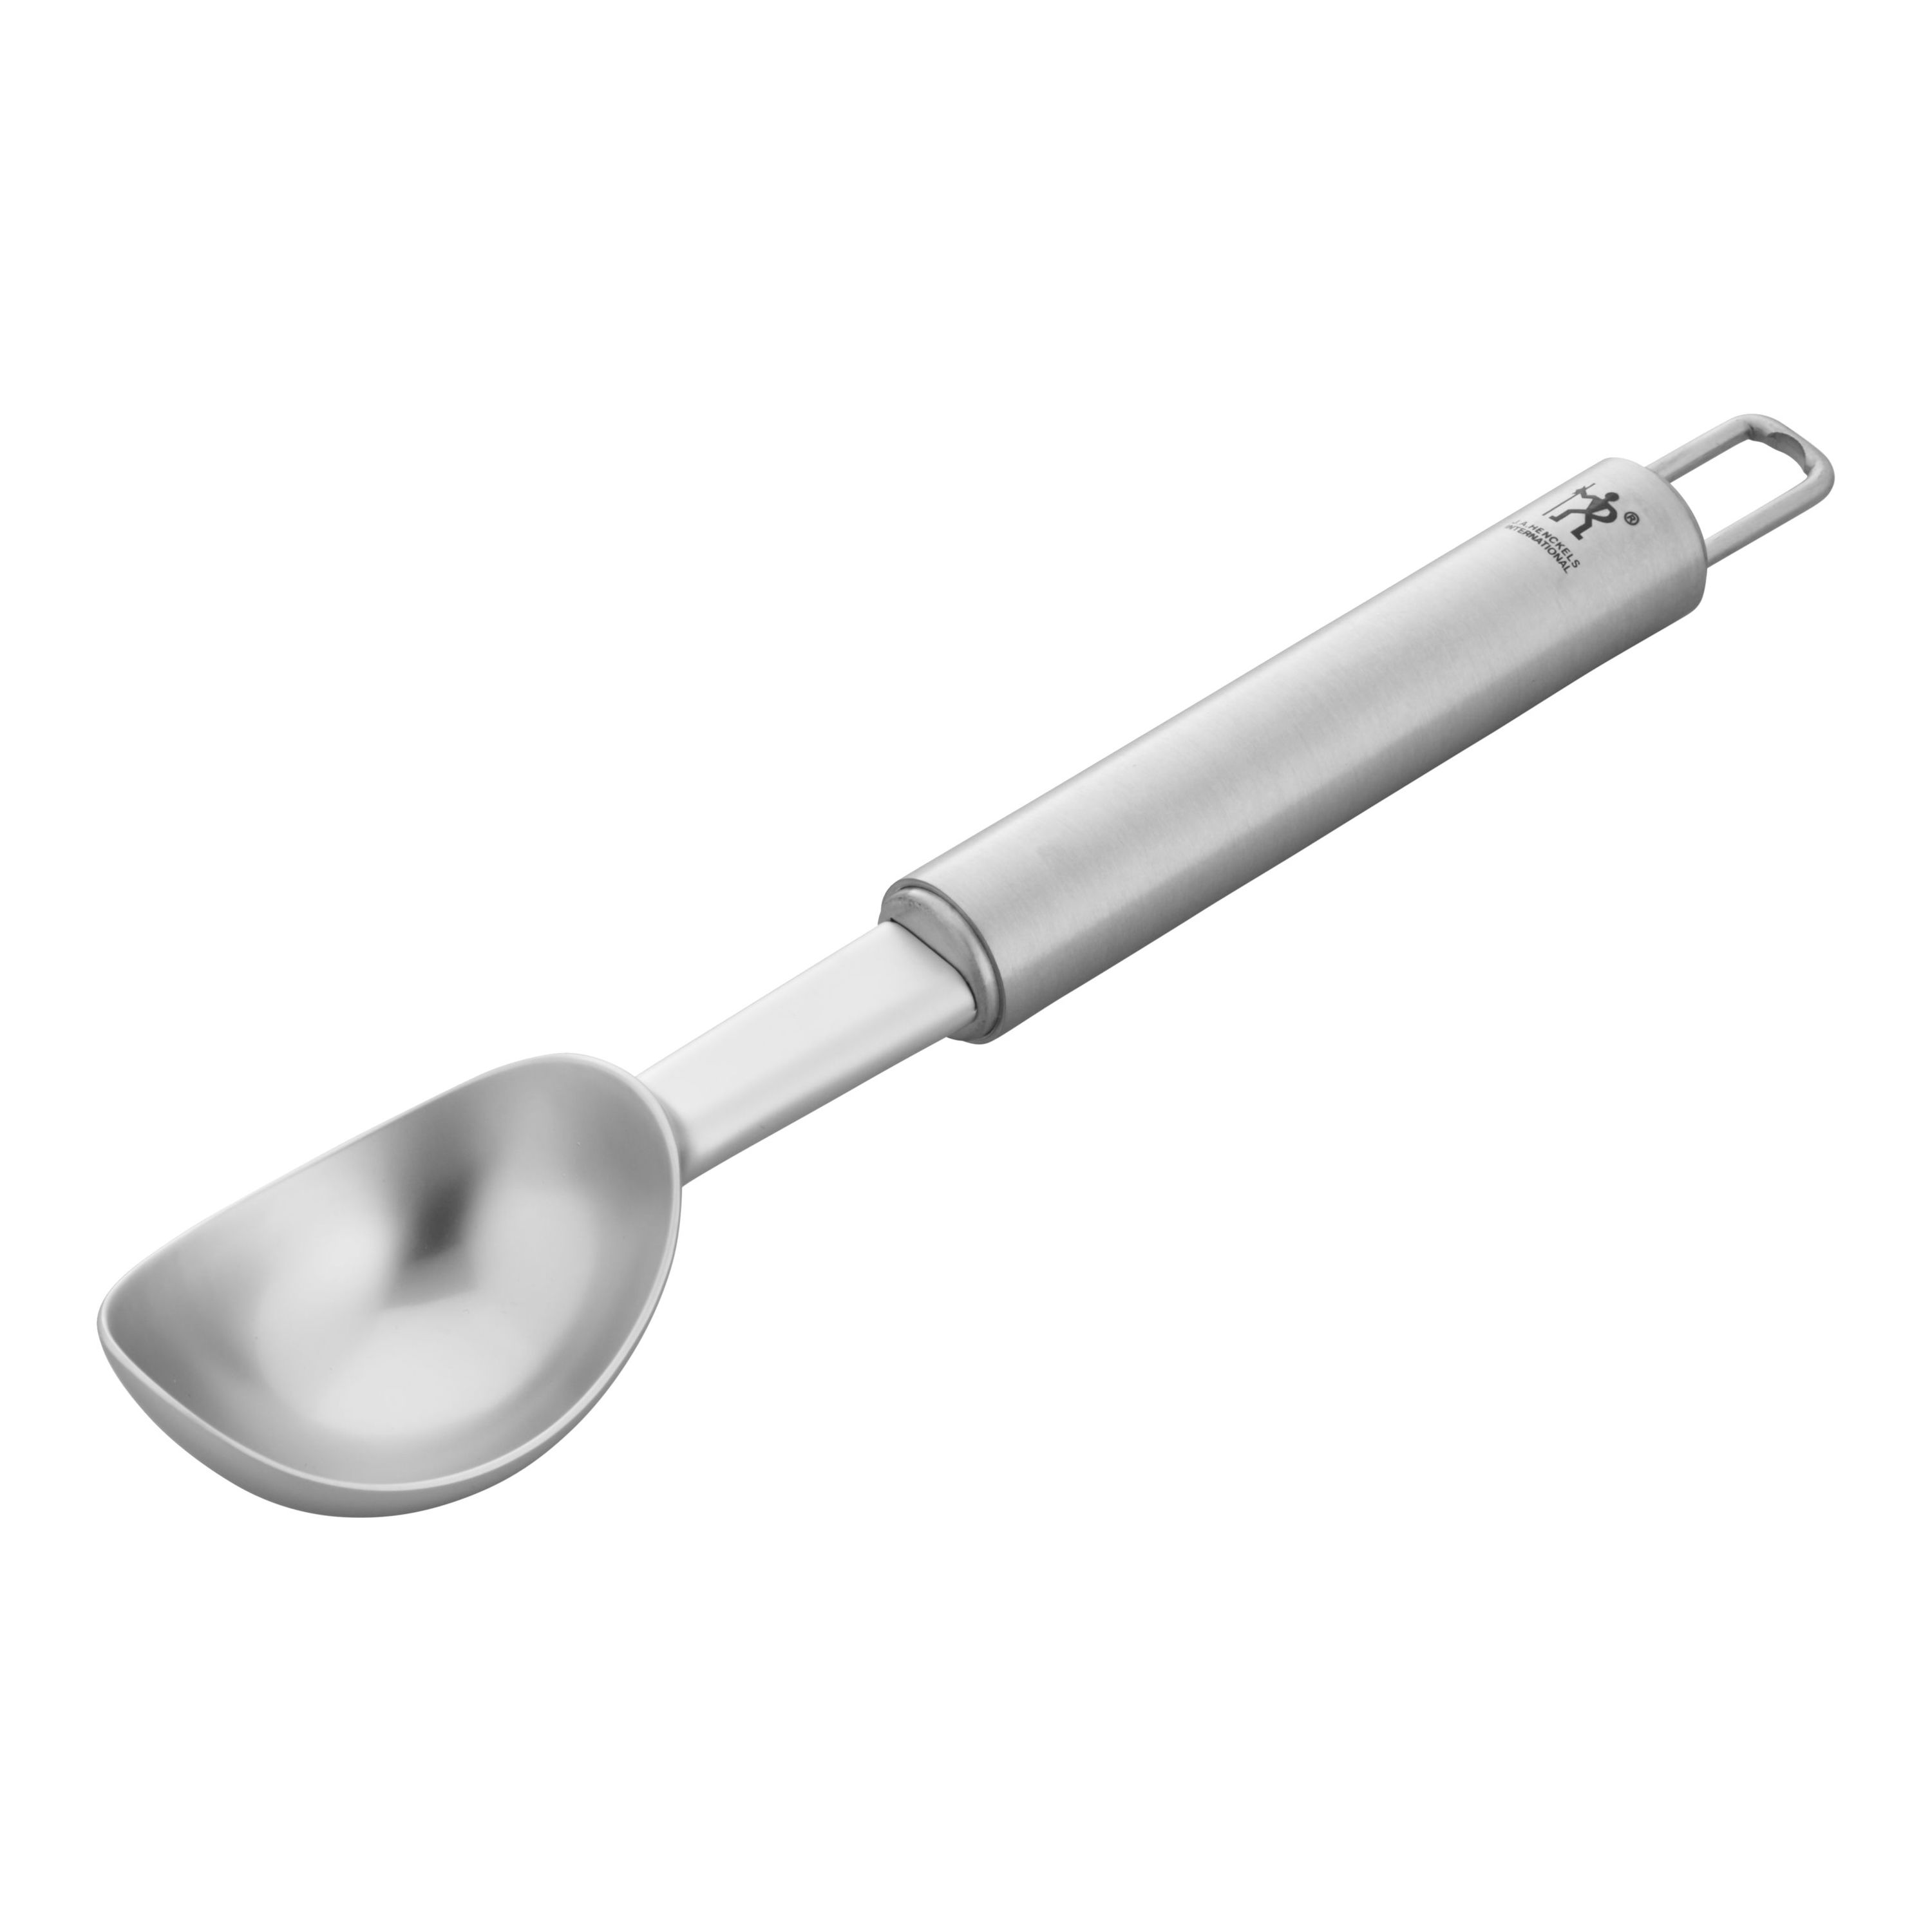 Henckels Cooking Tools 18/10 Stainless Steel, Ice cream scoop